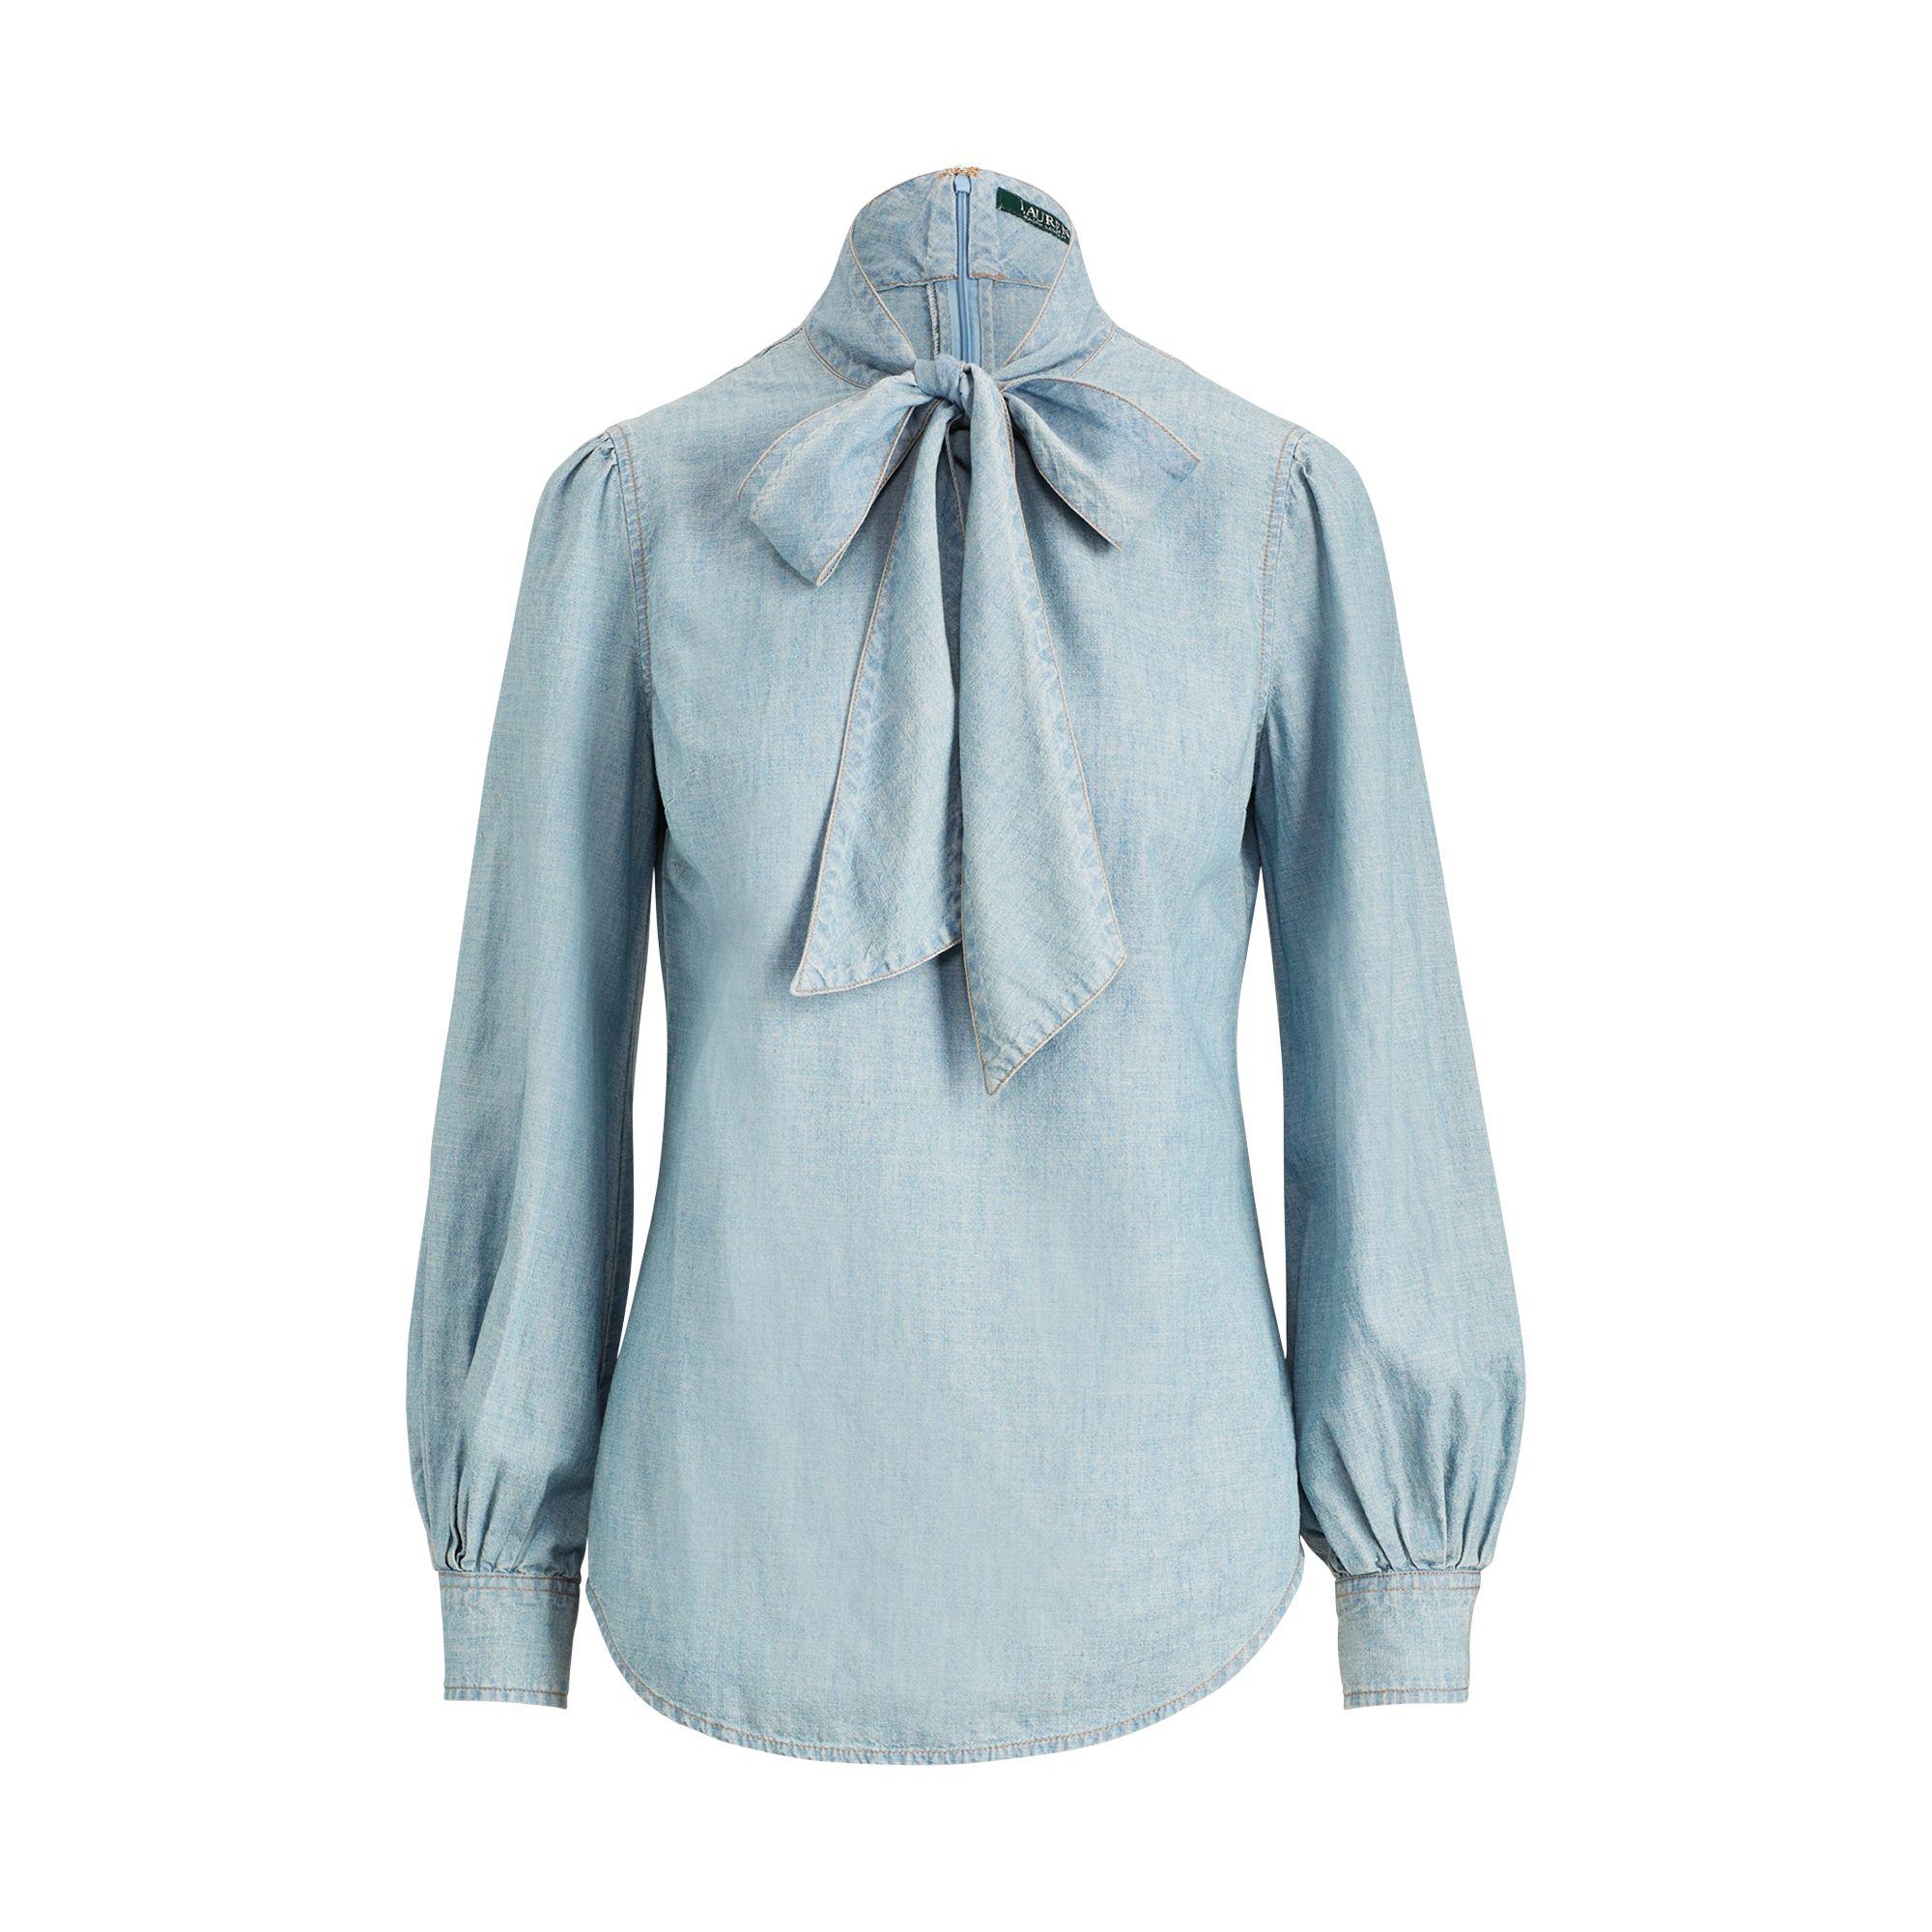 Lauren by Ralph Lauren Tie-neck Chambray Shirt in Blue | Lyst